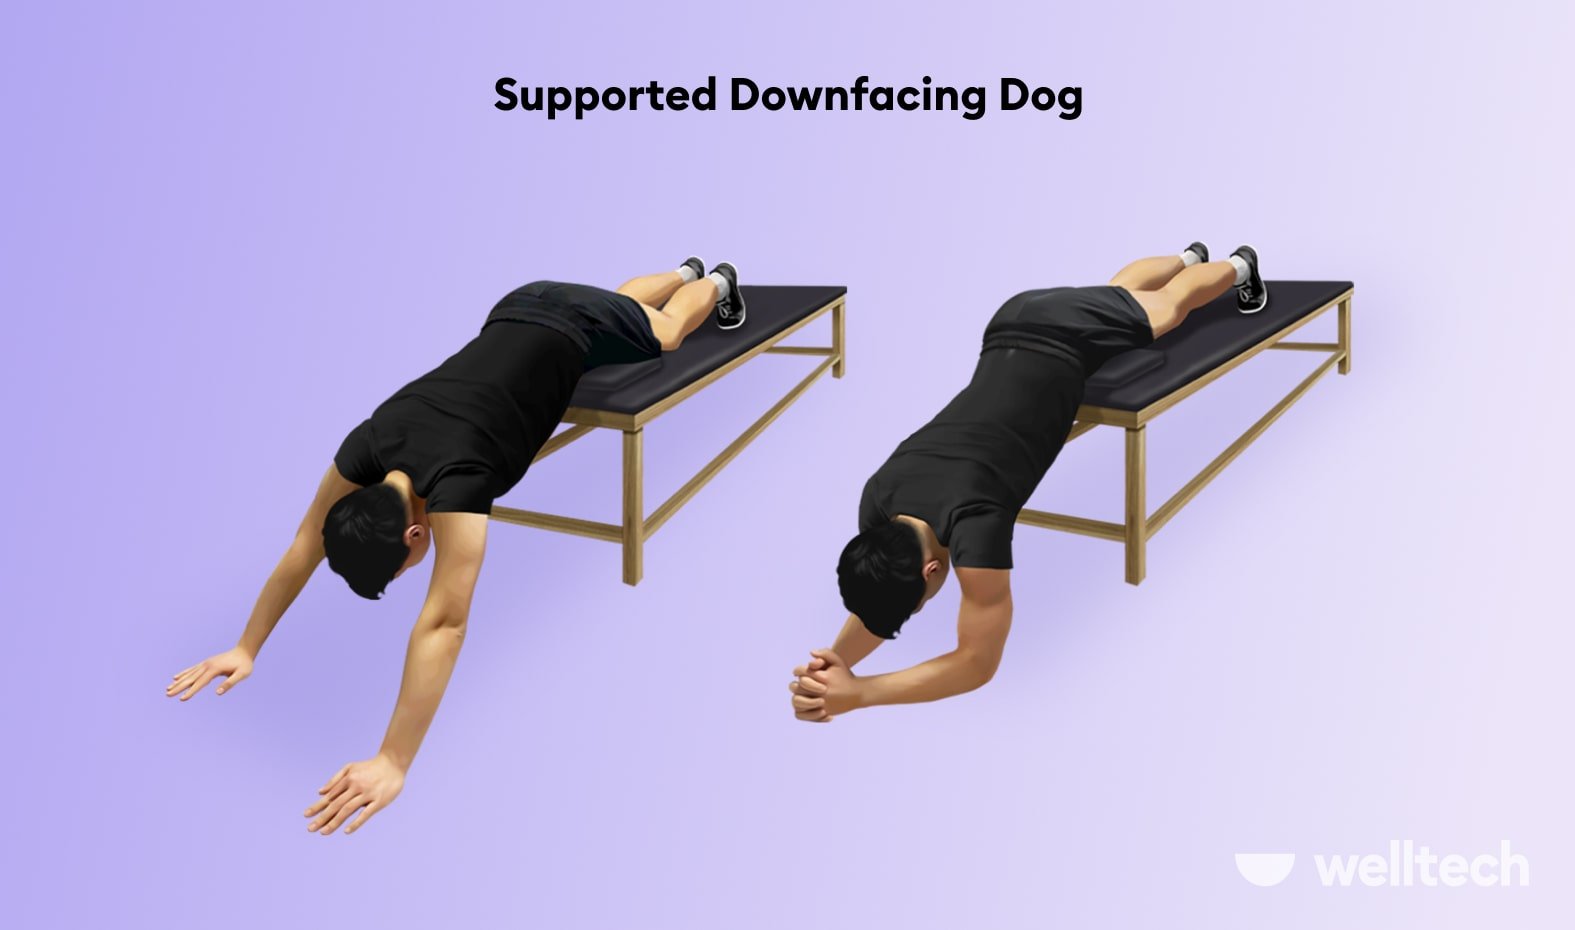 8 Stretches to Decompress Spine (Beginner-Friendly) - Welltech